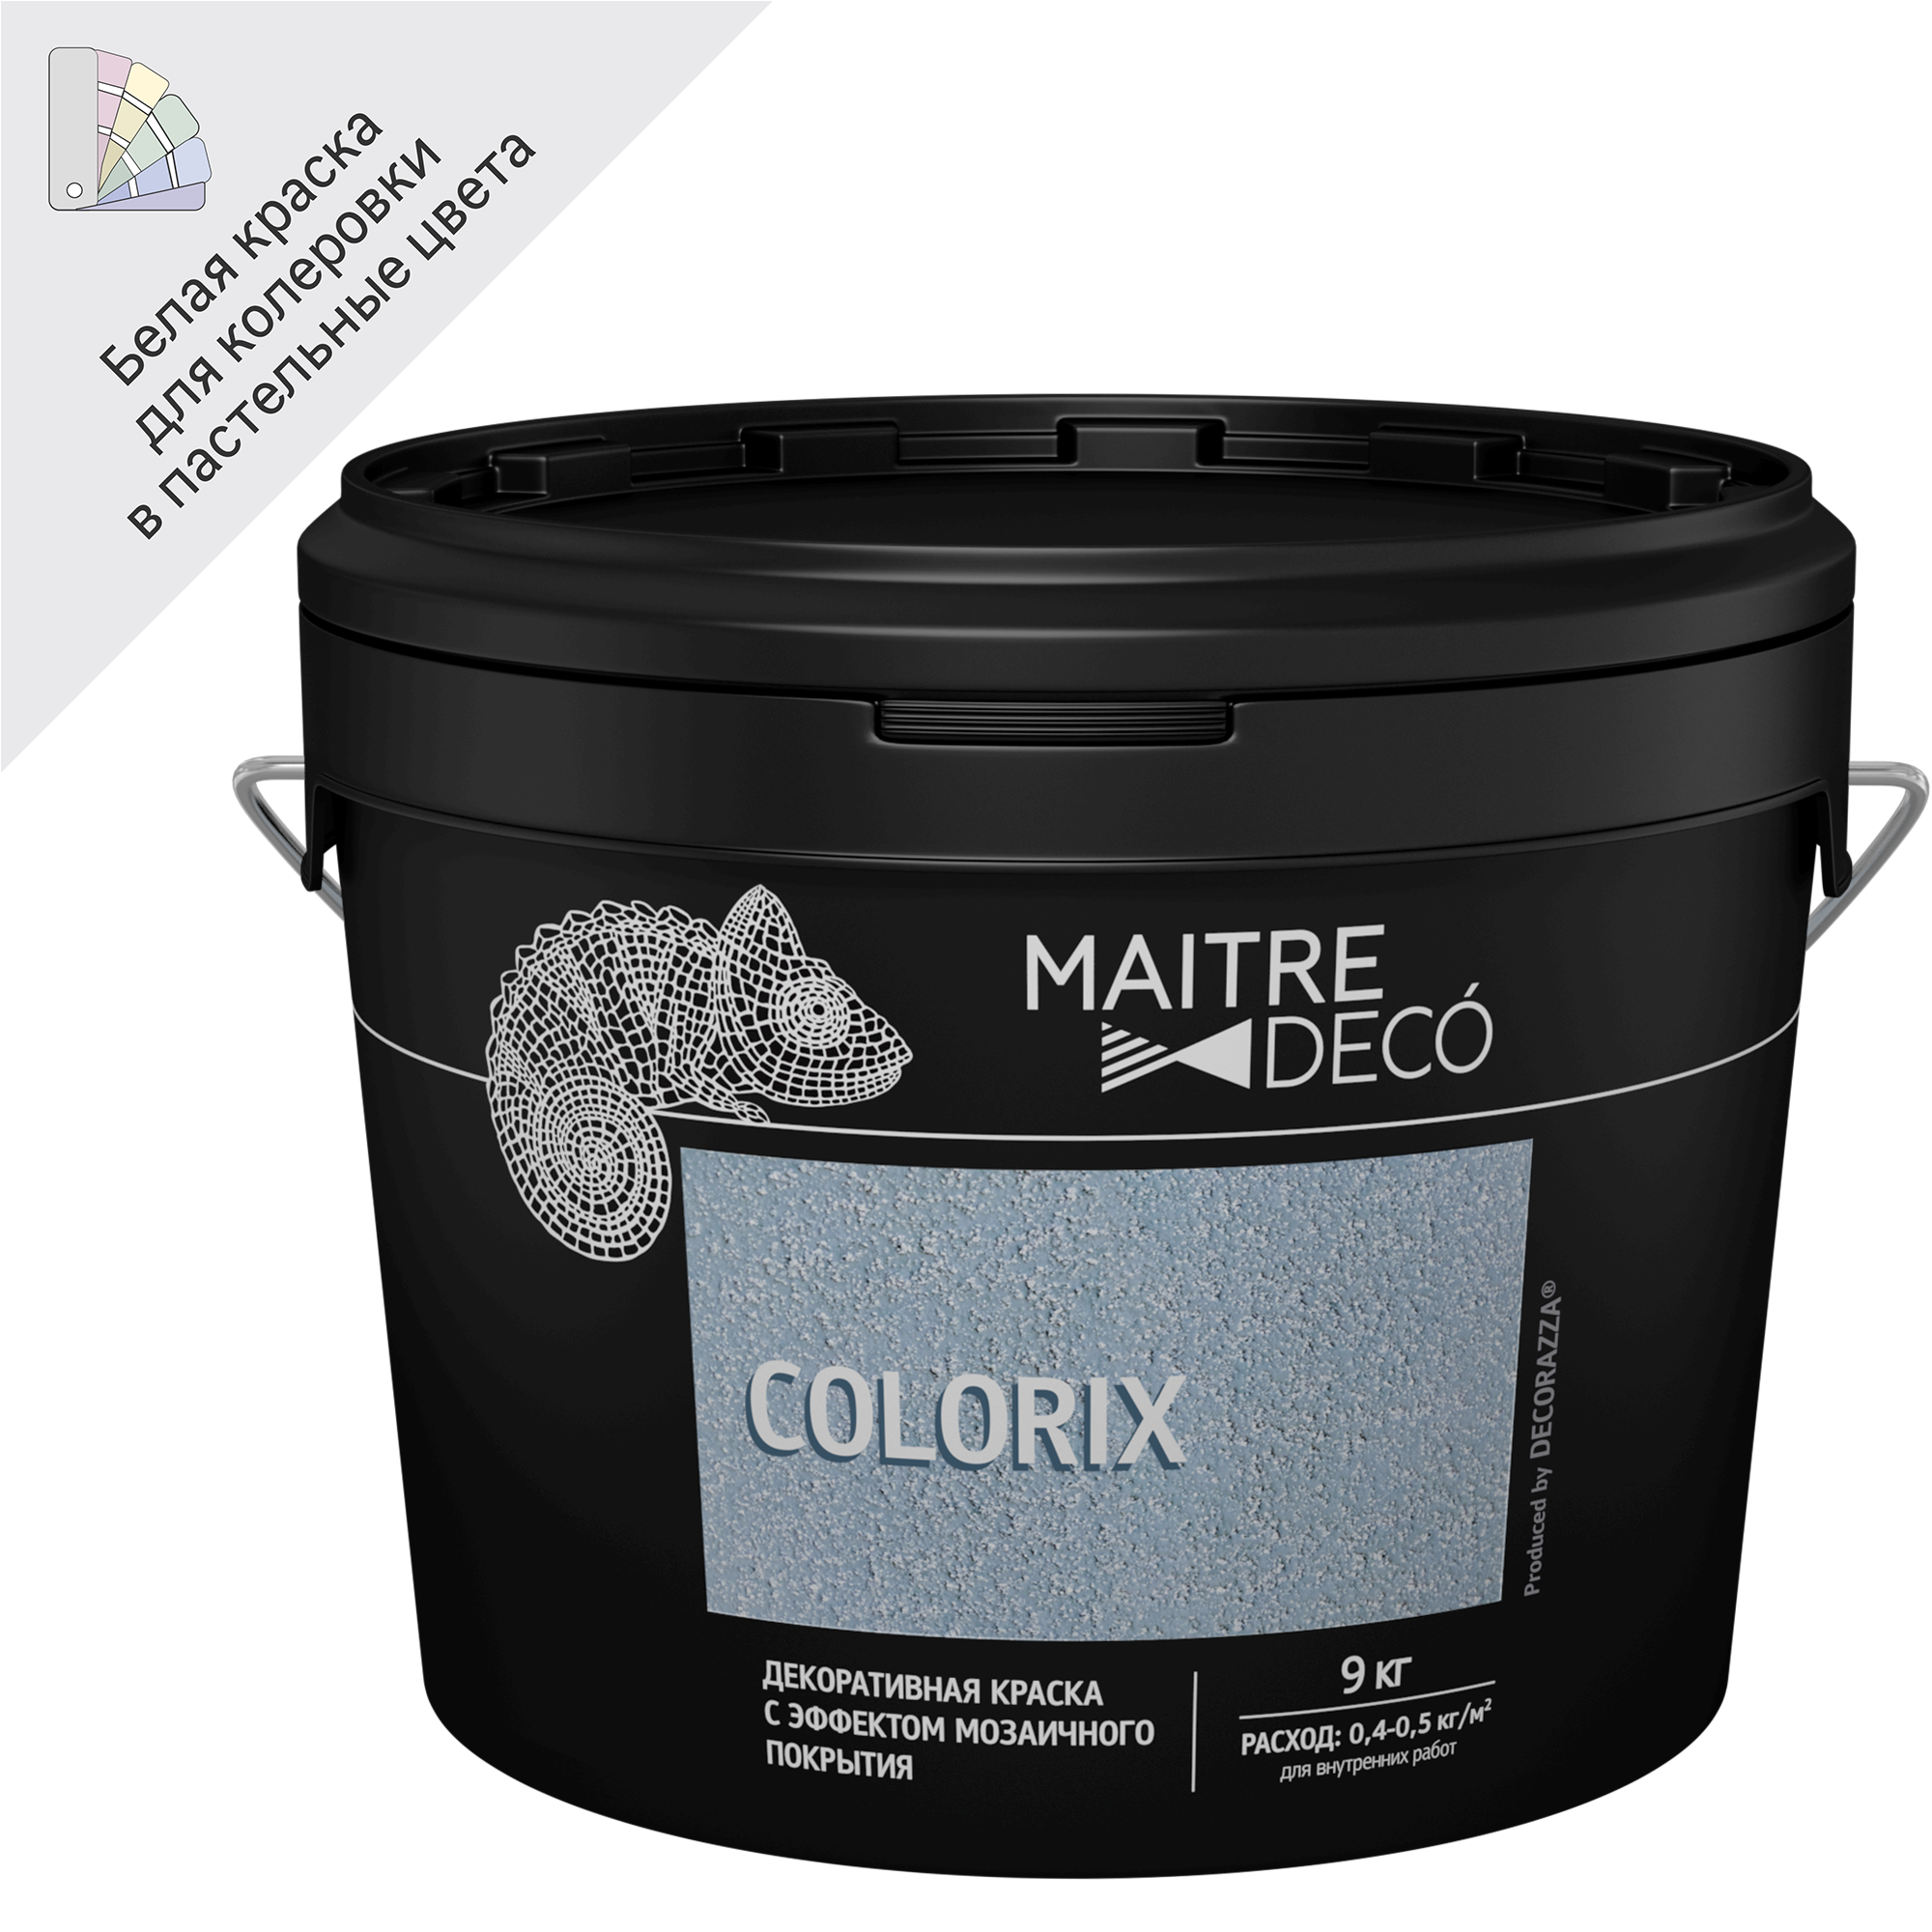 83262259 Декоративная краска Colorix с эффектом мозаичного покрытия 9 кг STLM-0040009 MAITRE DECO